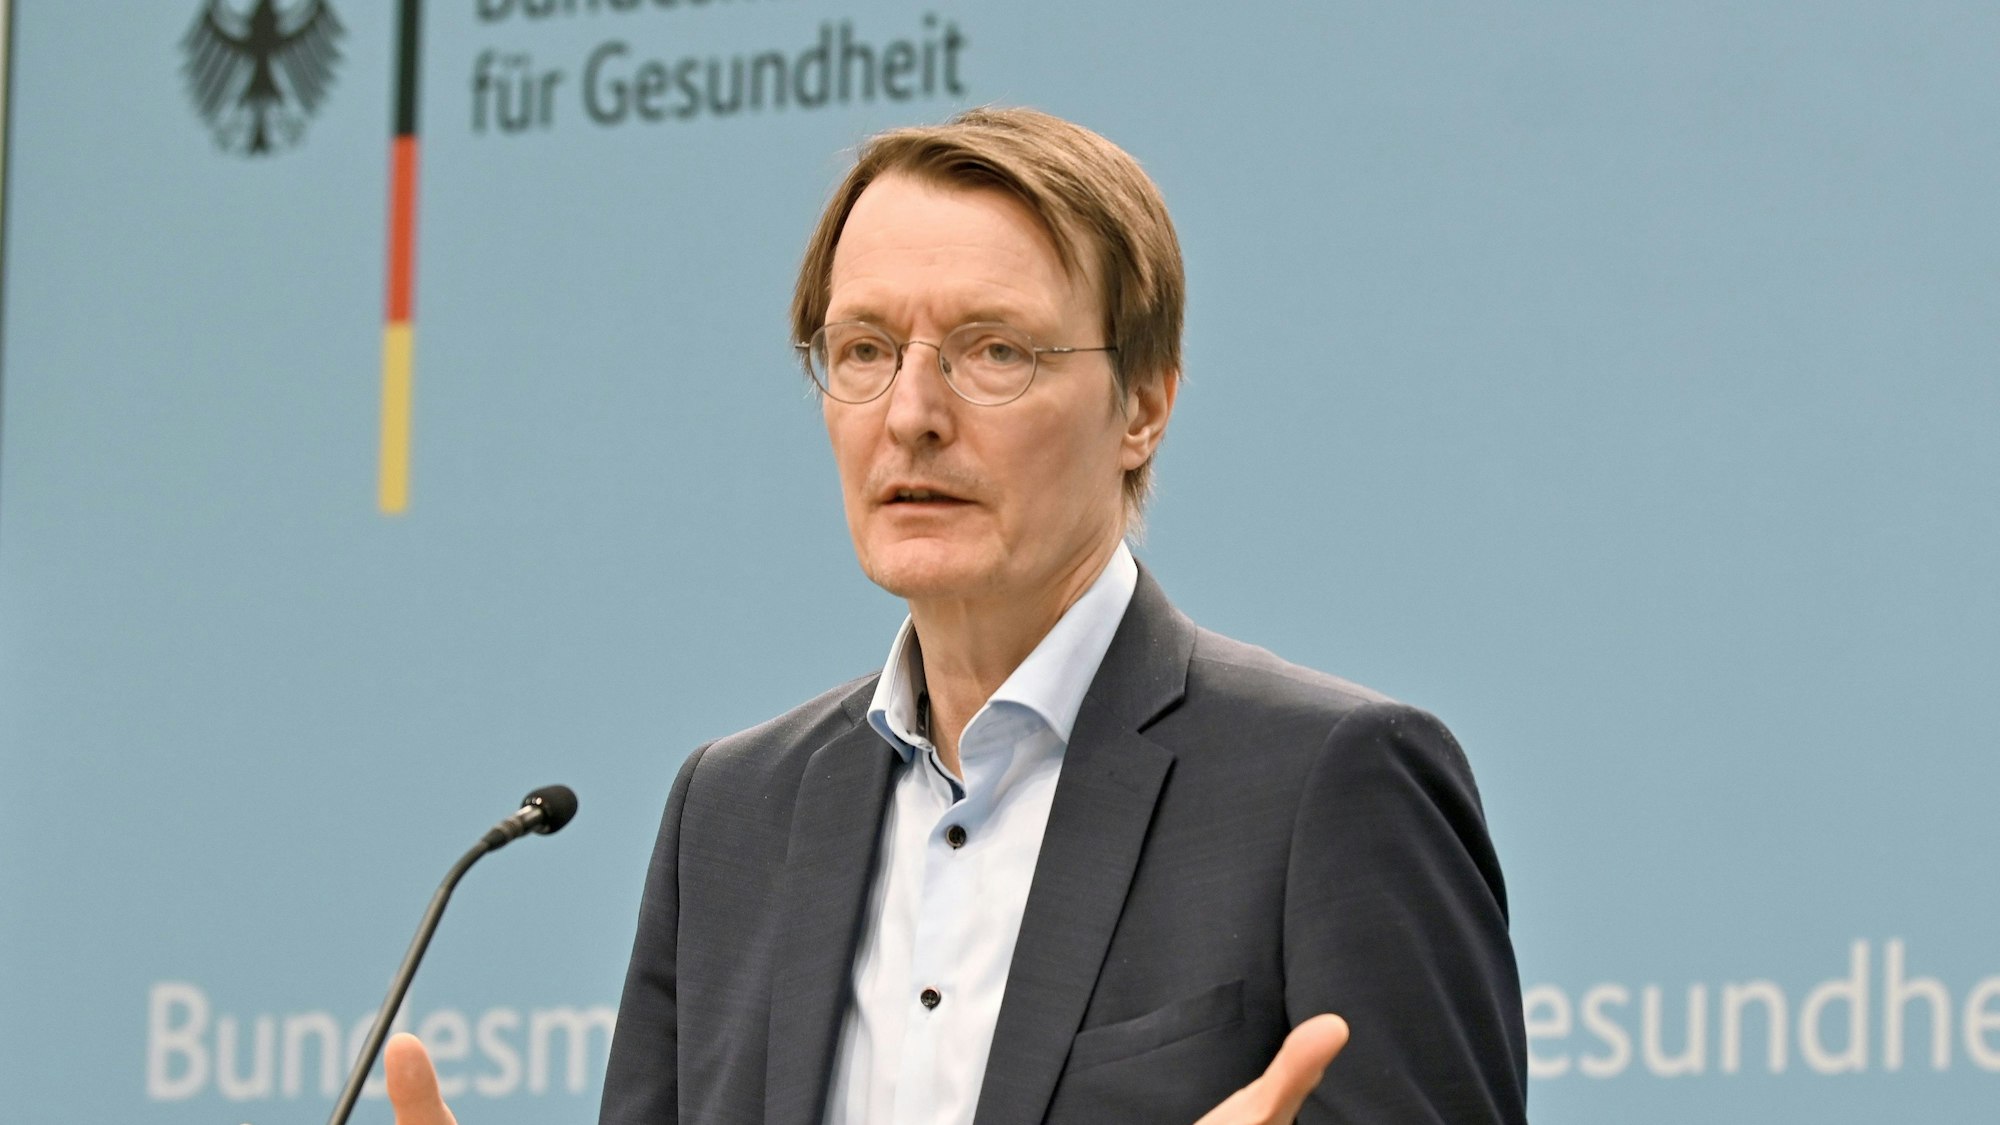 Karl Lauterbach (SPD), Bundesminister für Gesundheit, nimmt an einer Pressekonferenz teil. Er spricht in ein Mikrofon.